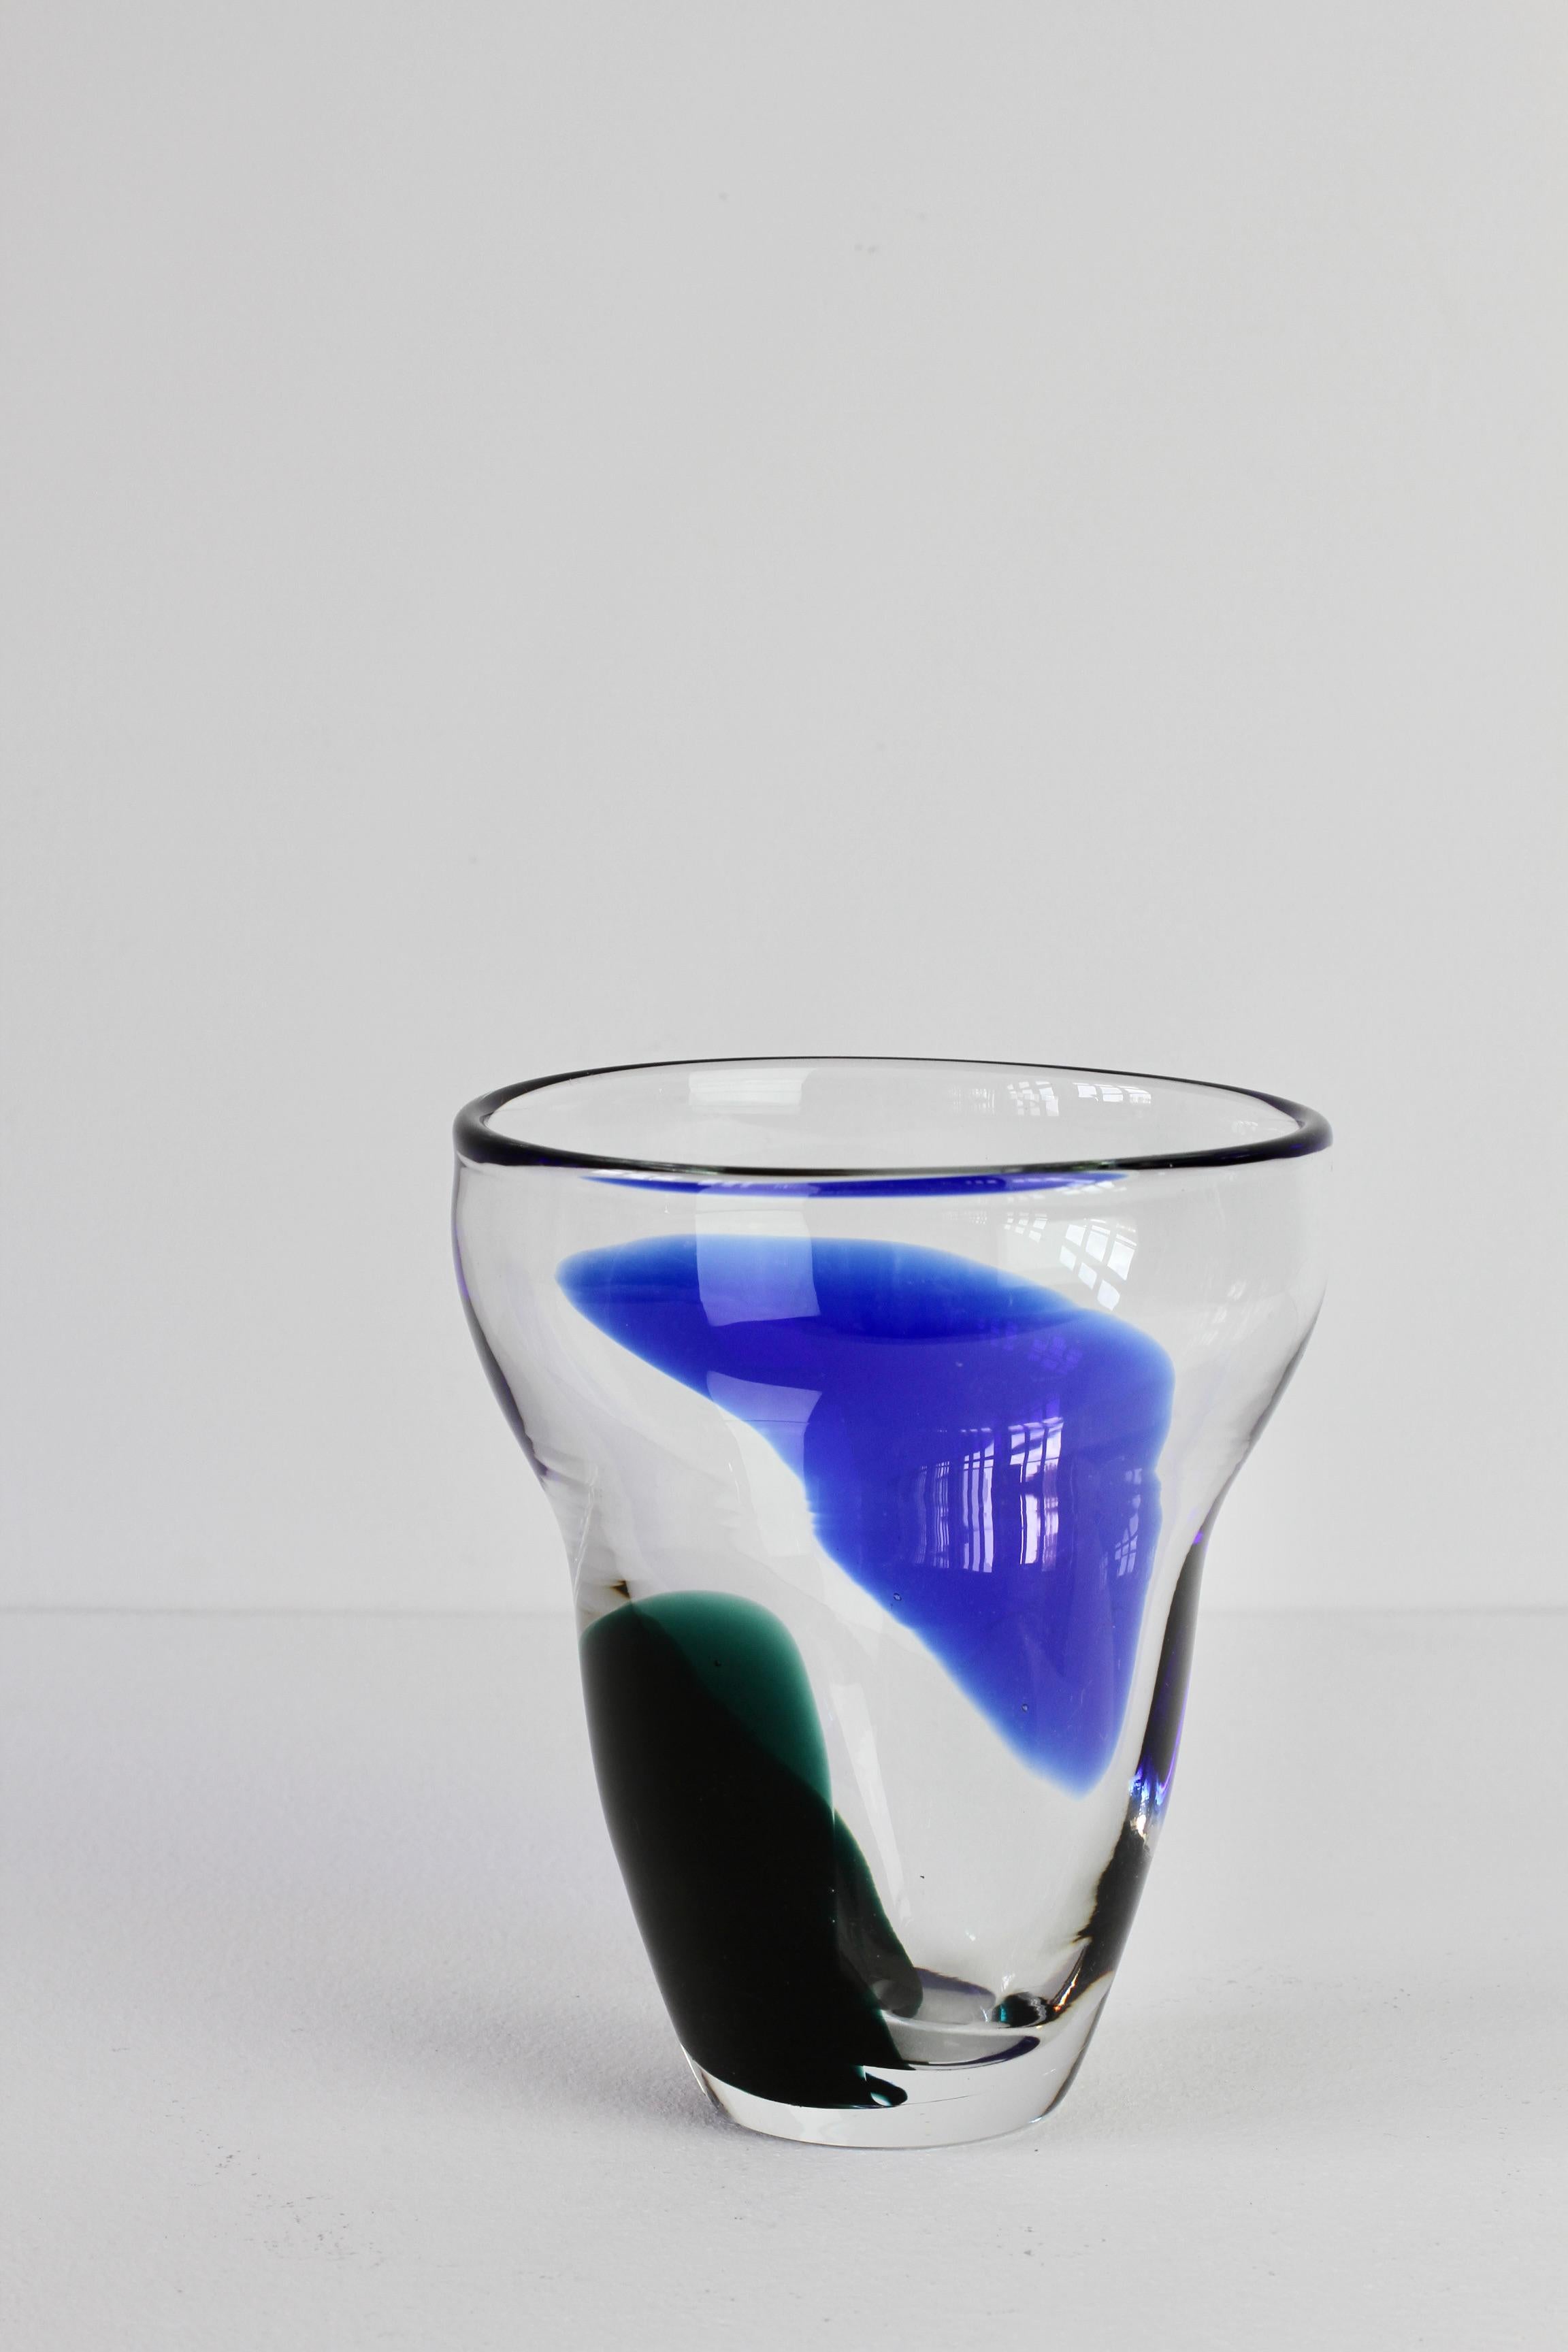 Blue & Green Patch Vase Signed by Wiktor Berndt for Flygsfors Glass Sweden, 1958 For Sale 2